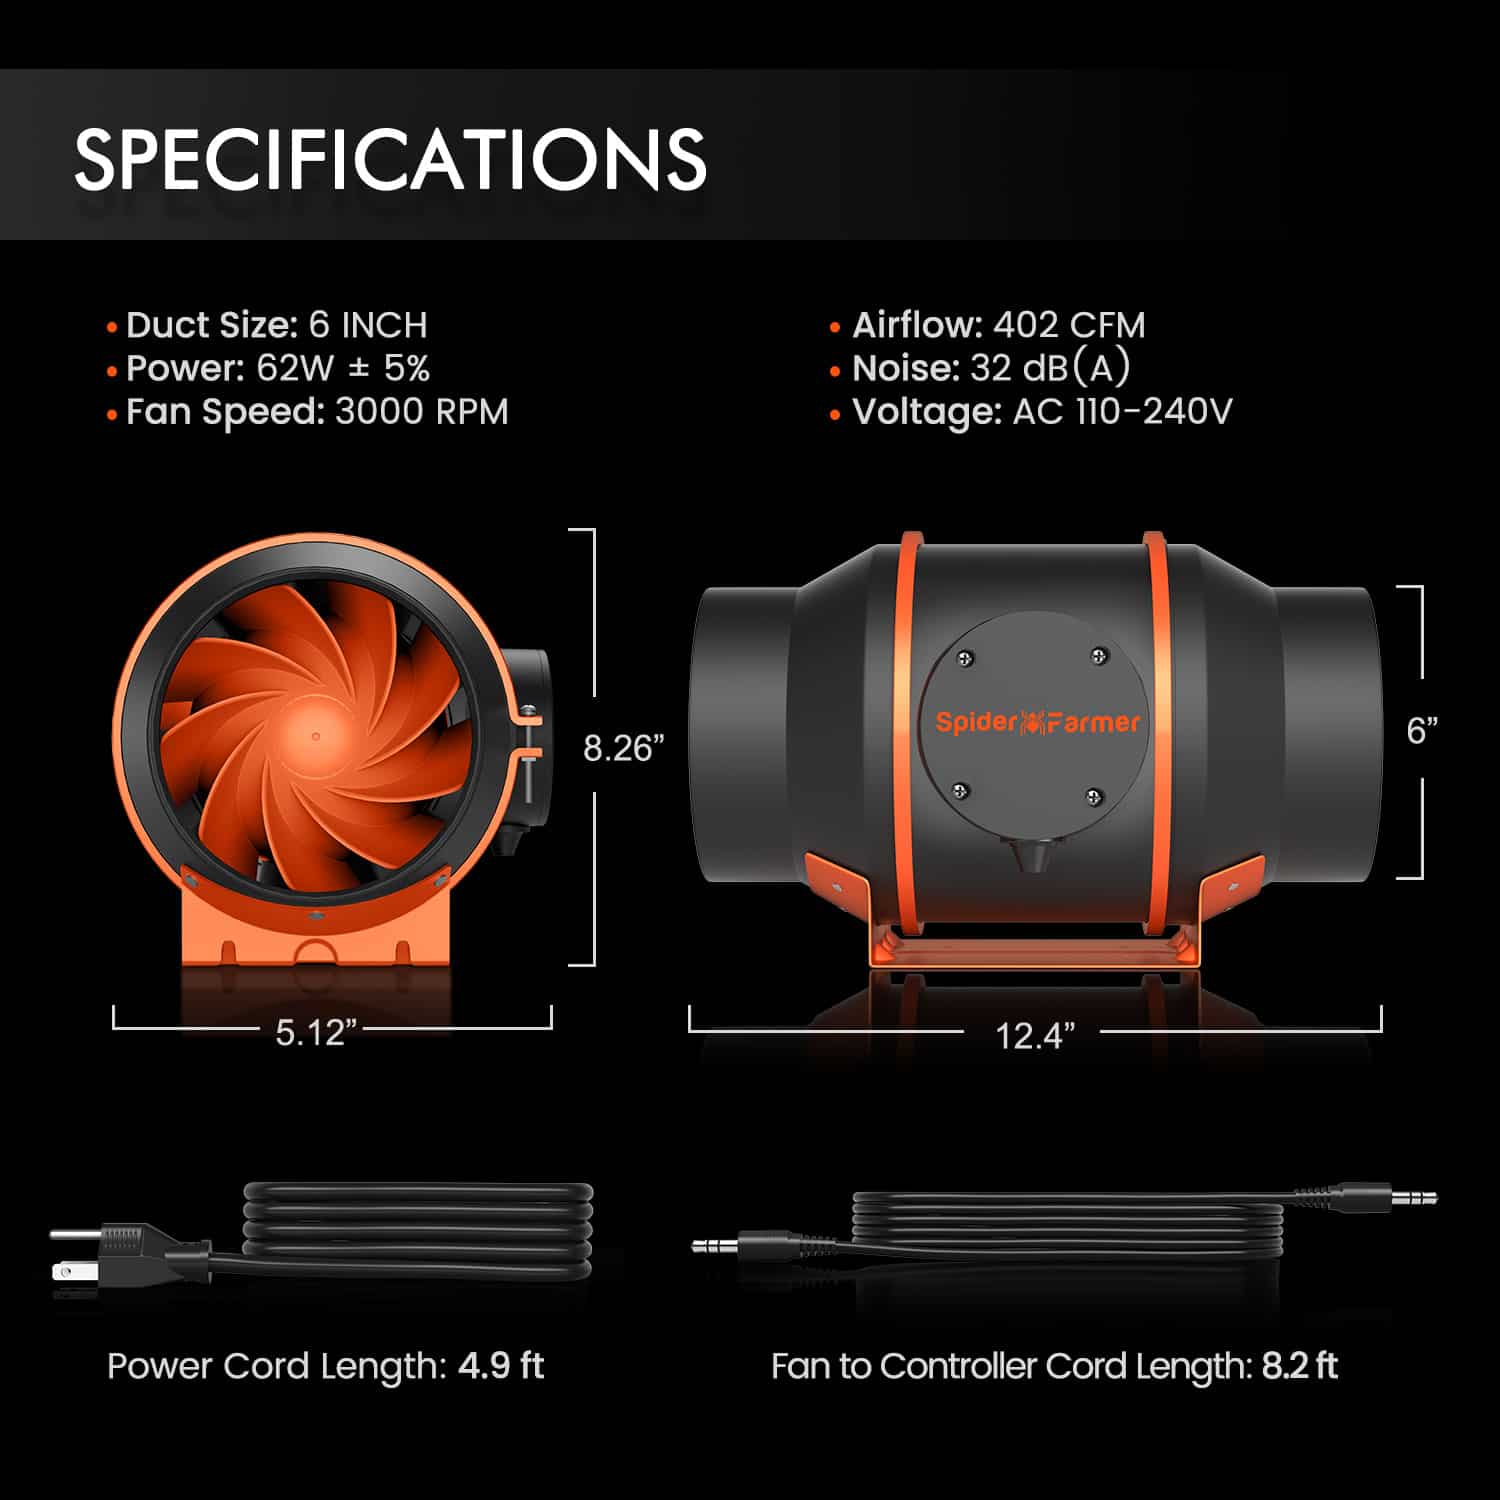 Product Secondary Image:Spider Farmer® Ventilateur de conduit en ligne silencieux de 6 pouces avec régulateur température-humidité